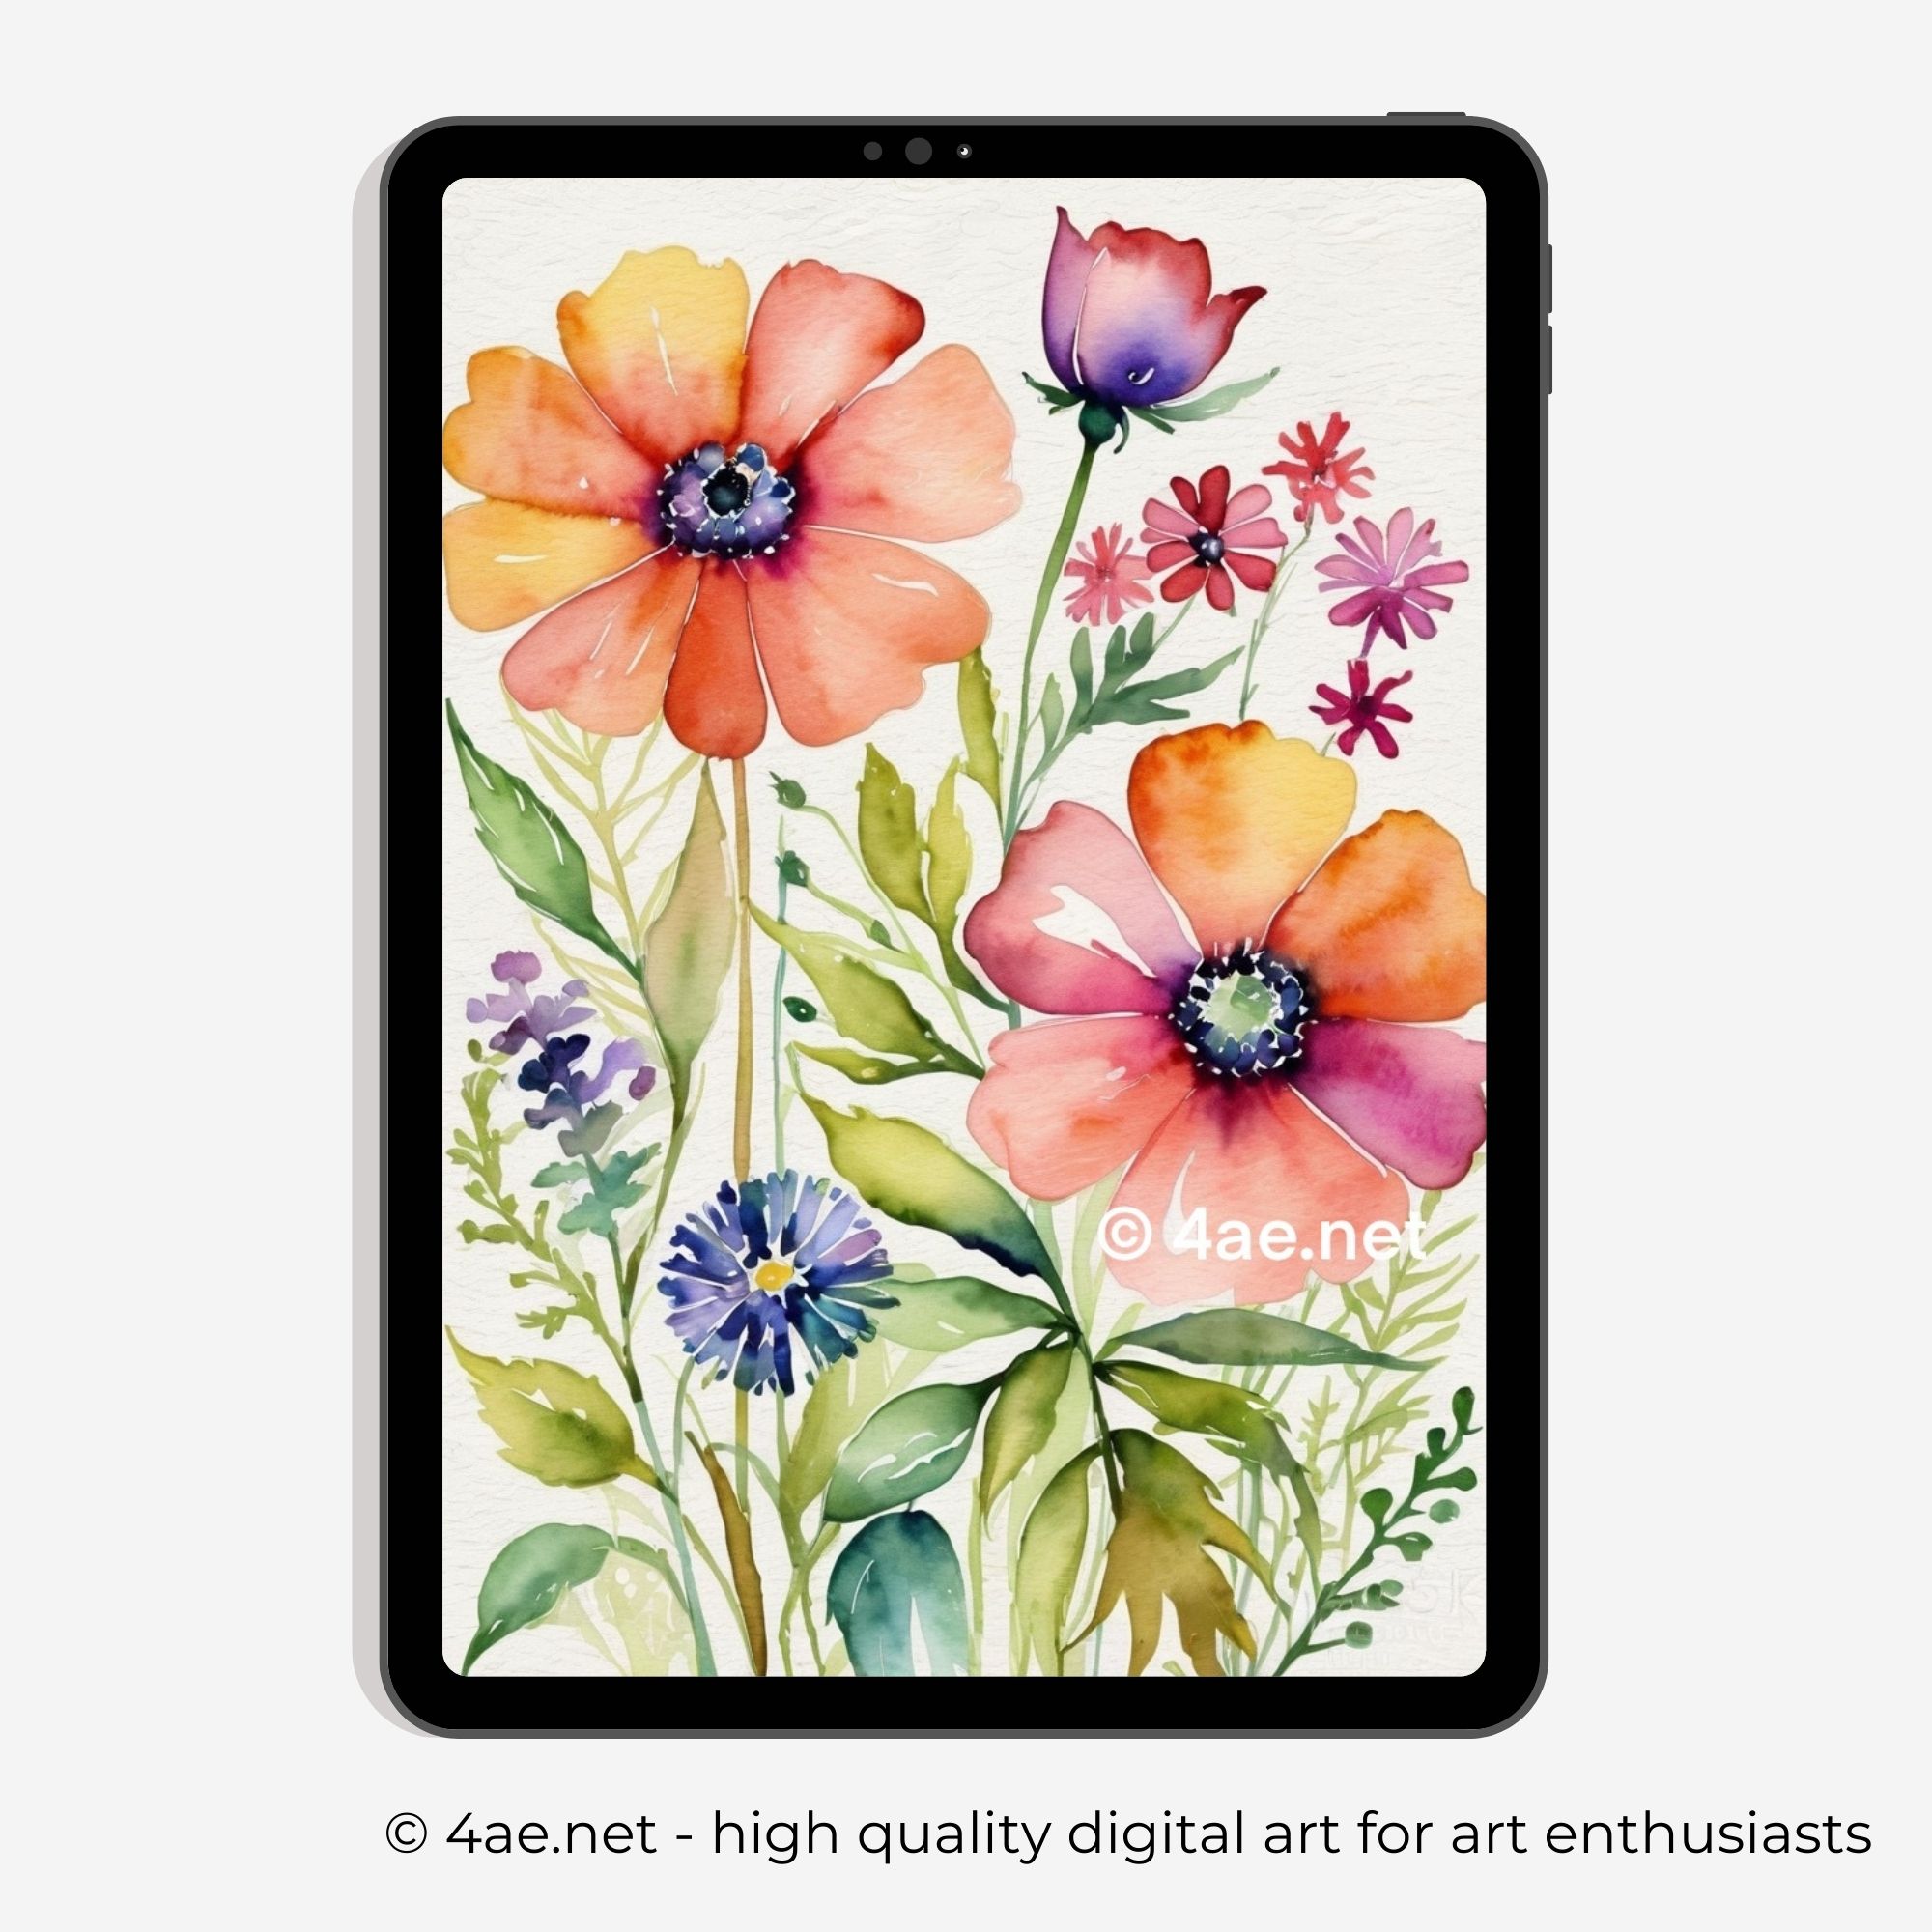 Floral iPad Wallpaper #70 Garden Glow